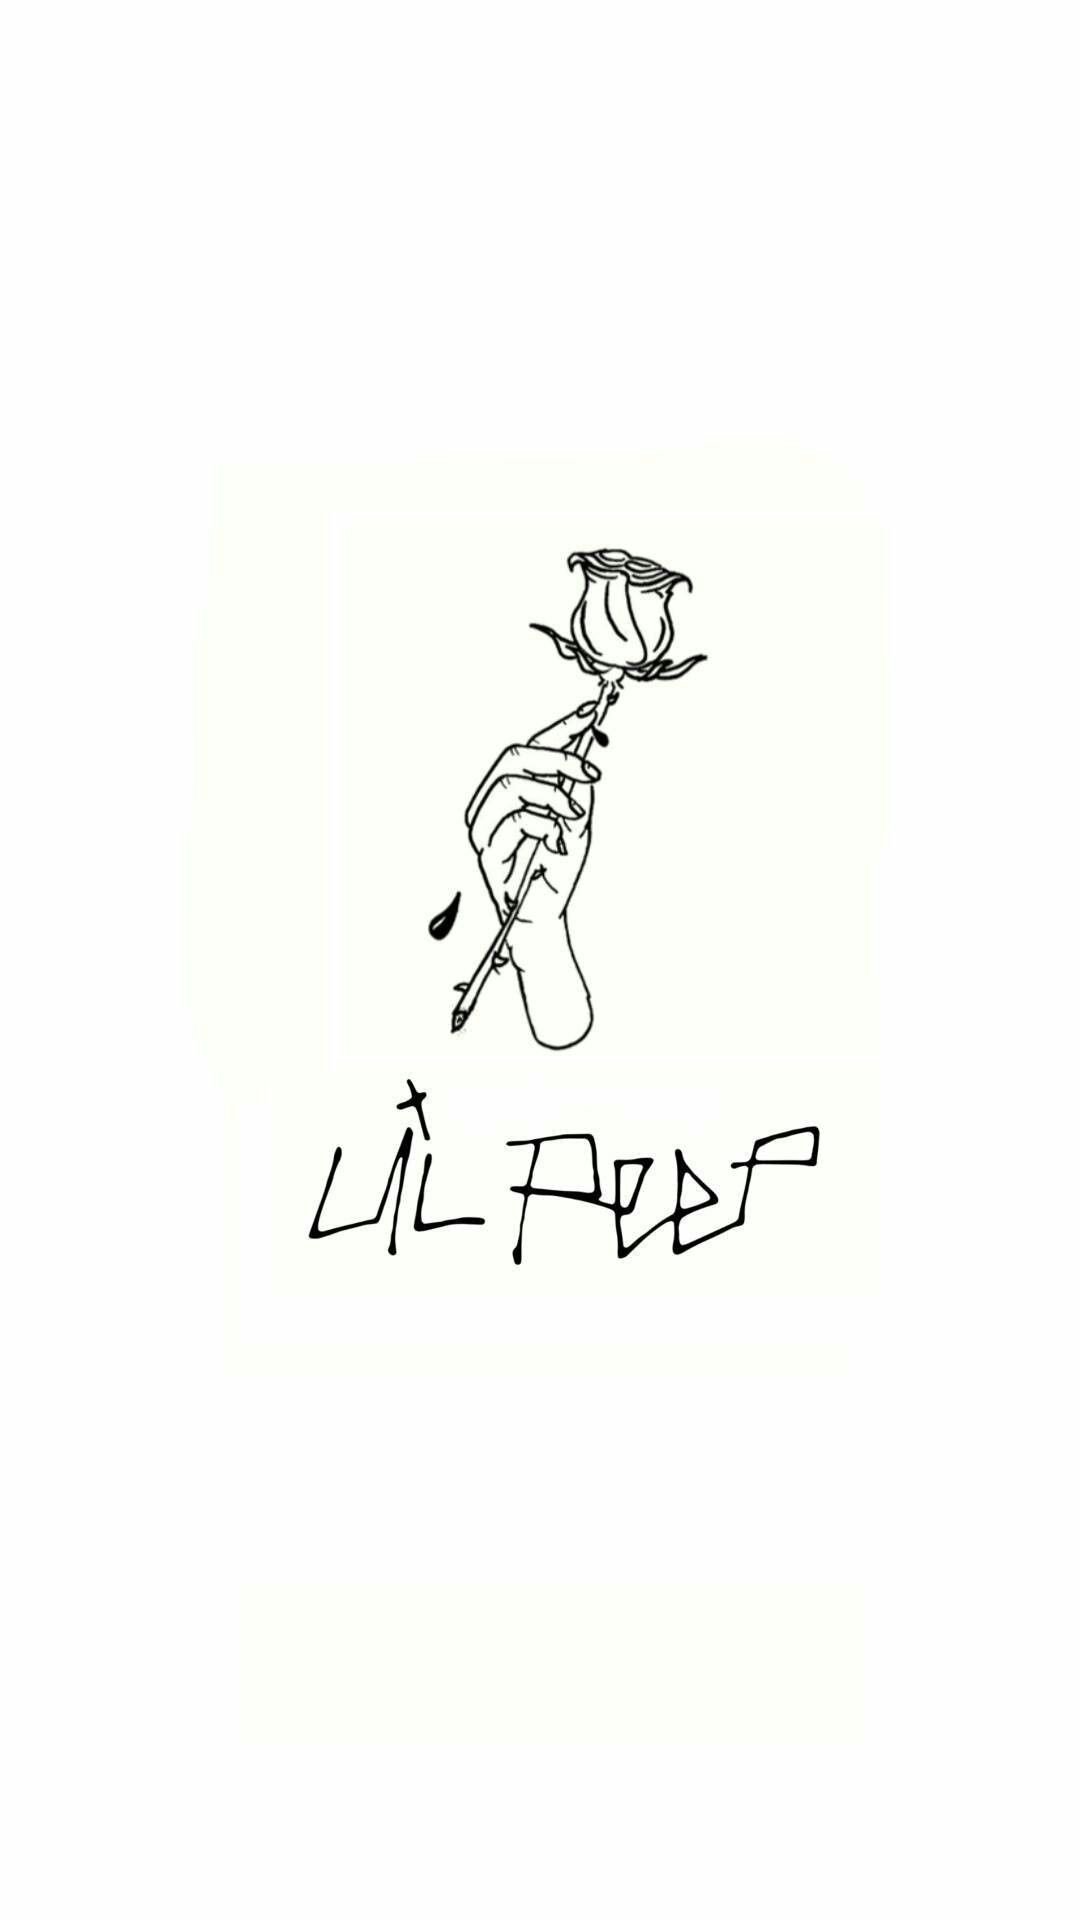 Lil Peep рисунок эскиз (ФОТО) - Как создать уникальный дизайн ...